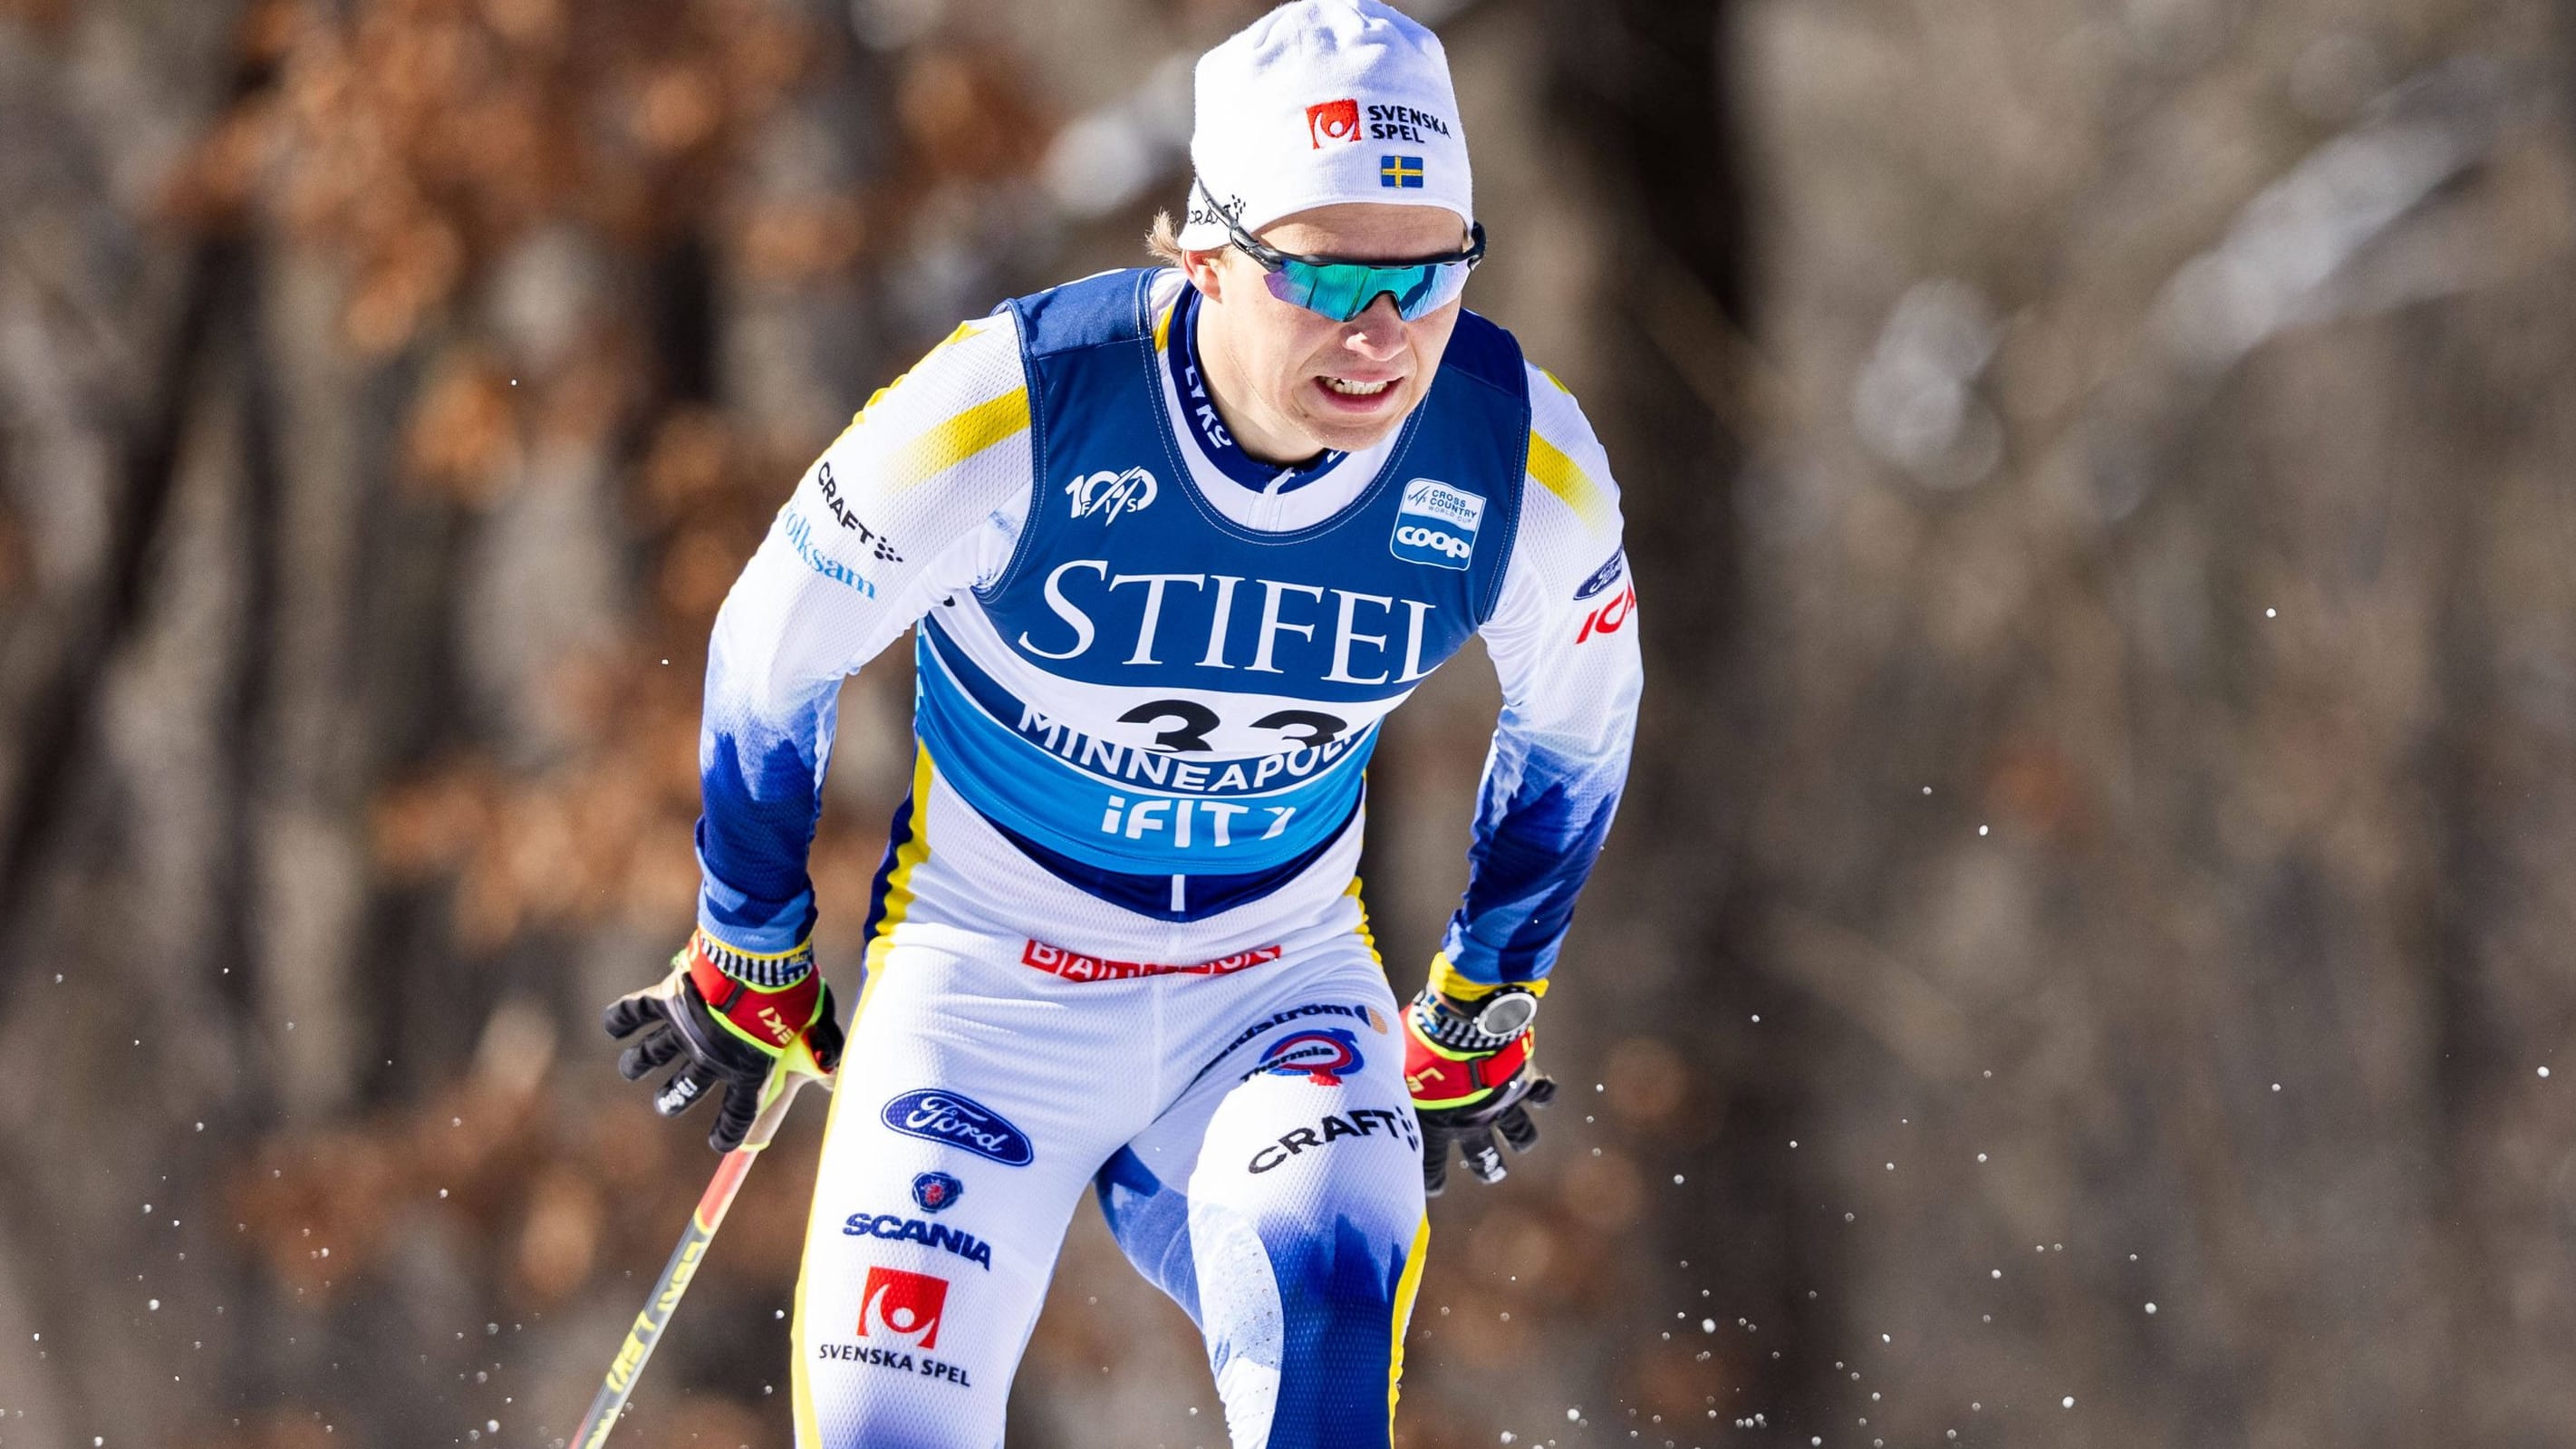 Skilanglauf: Penis-Panne beim Weltcuprennen um schwedischen Läufer Berglund